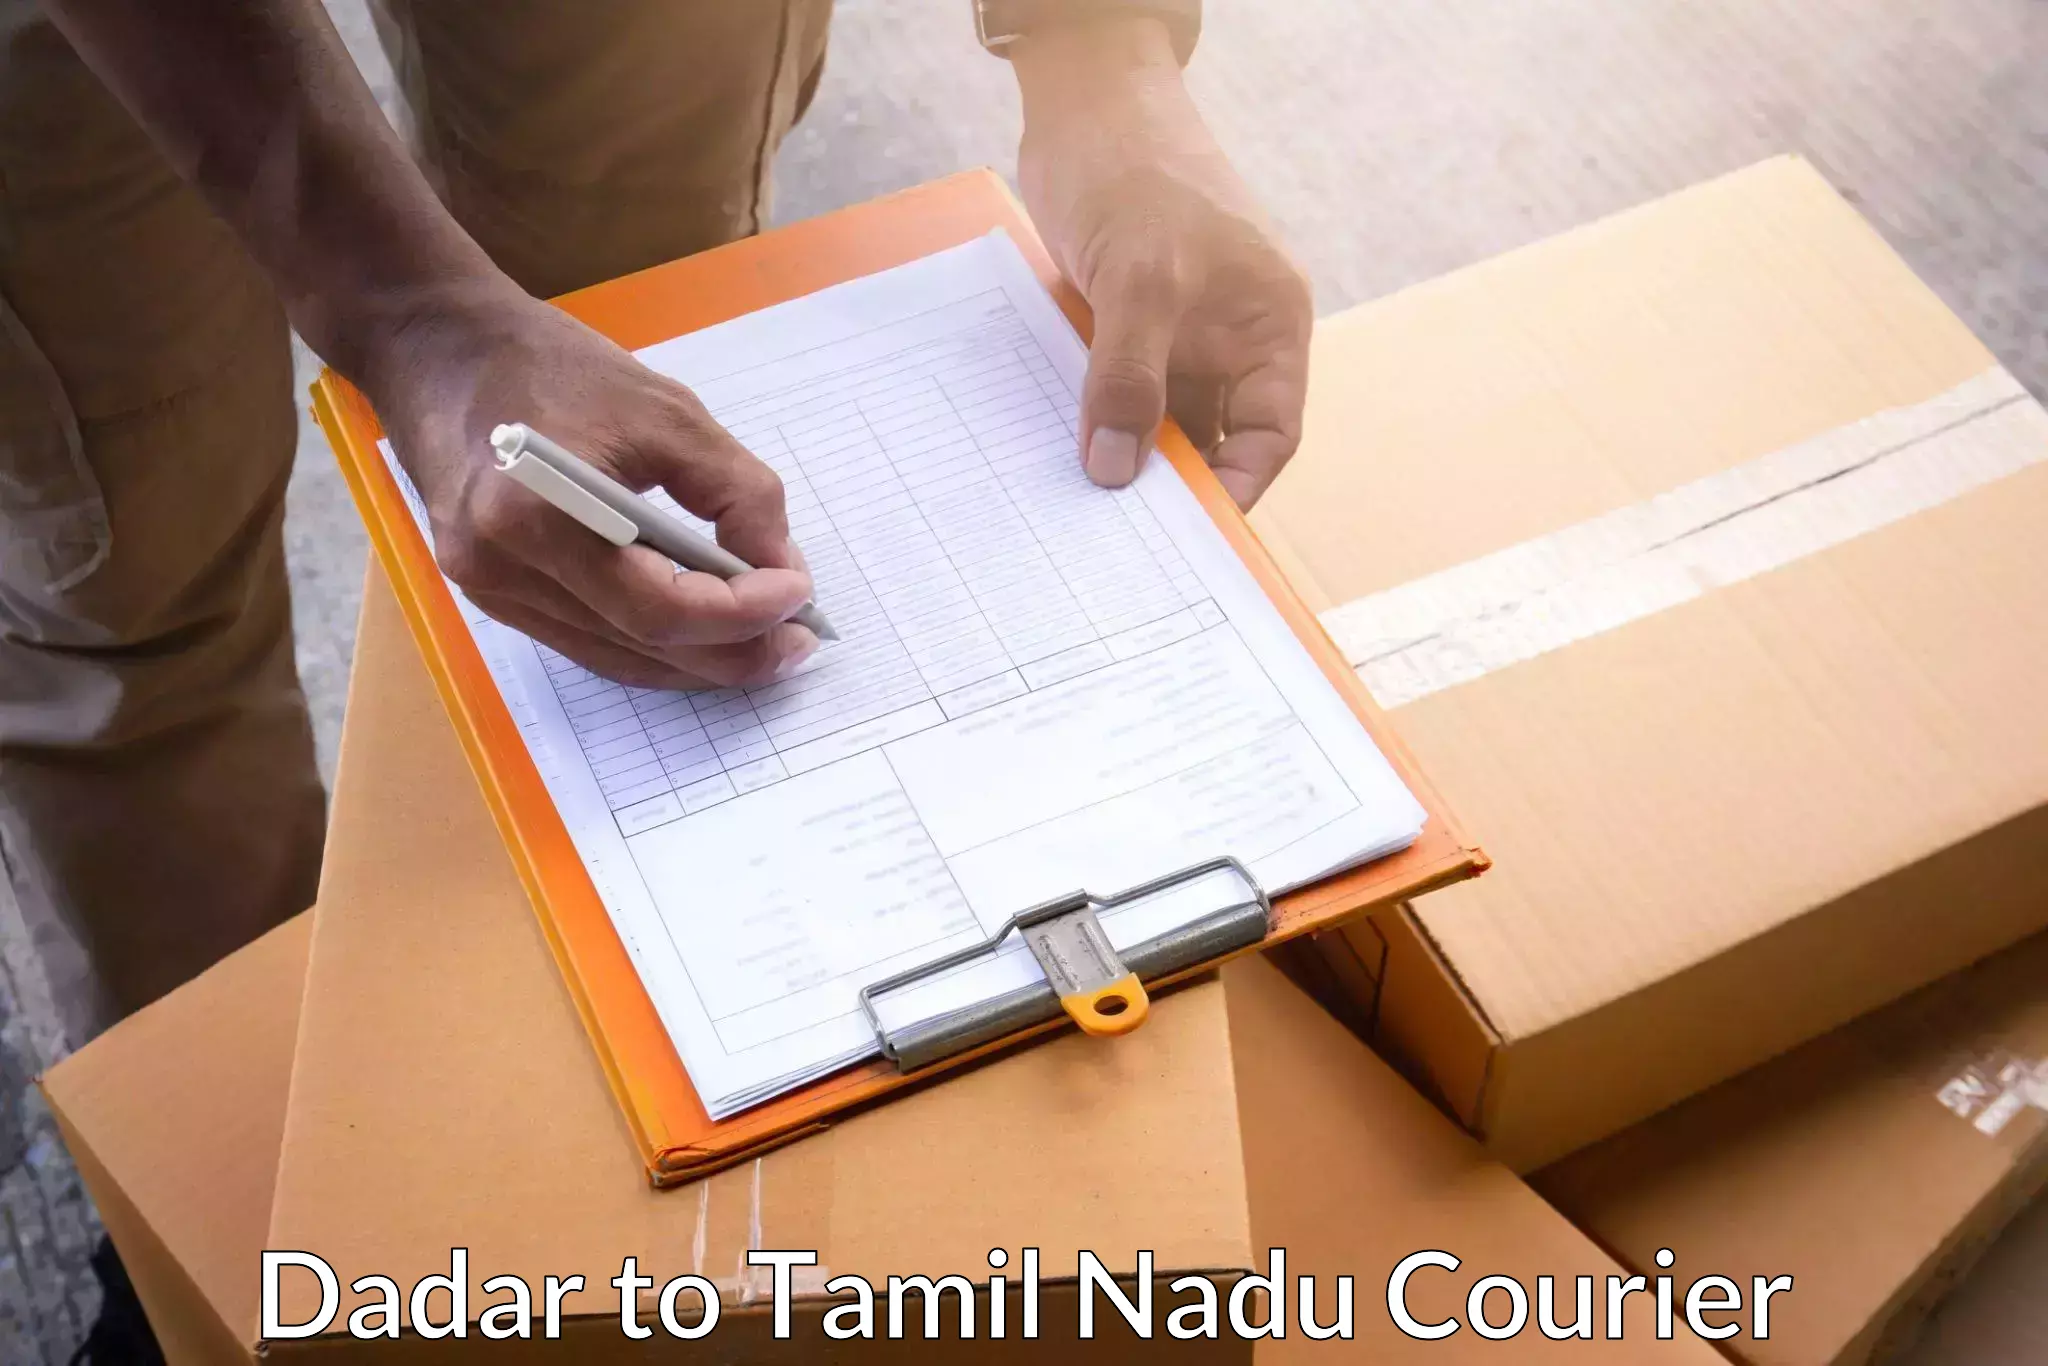 Global logistics network Dadar to Tiruvarur